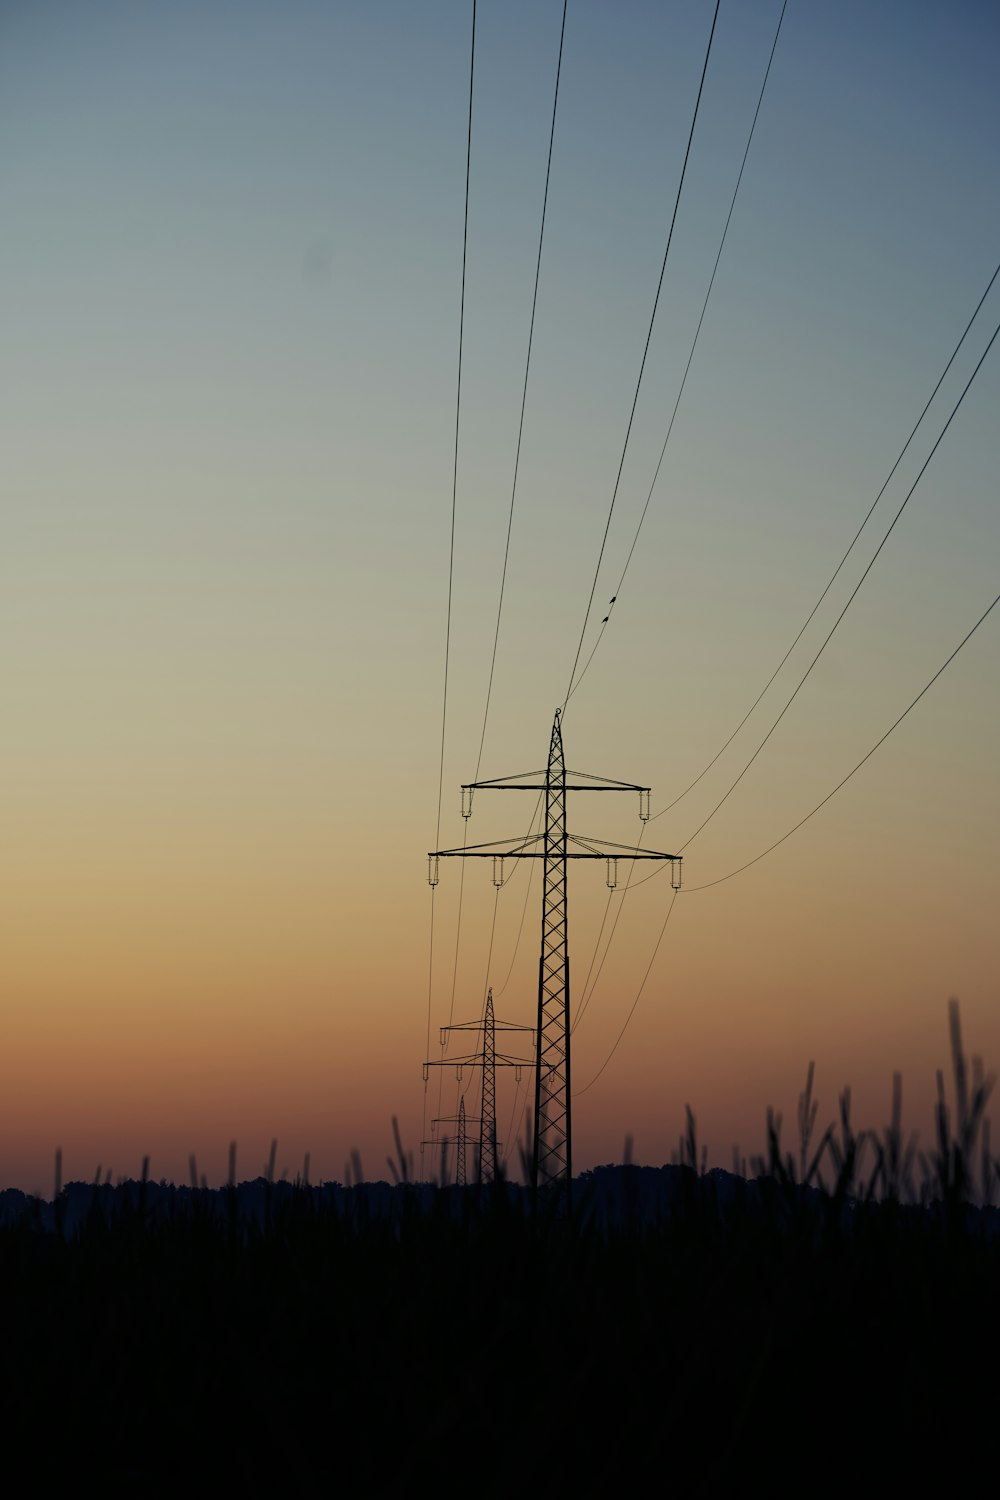 Silueta de poste eléctrico durante la puesta de sol